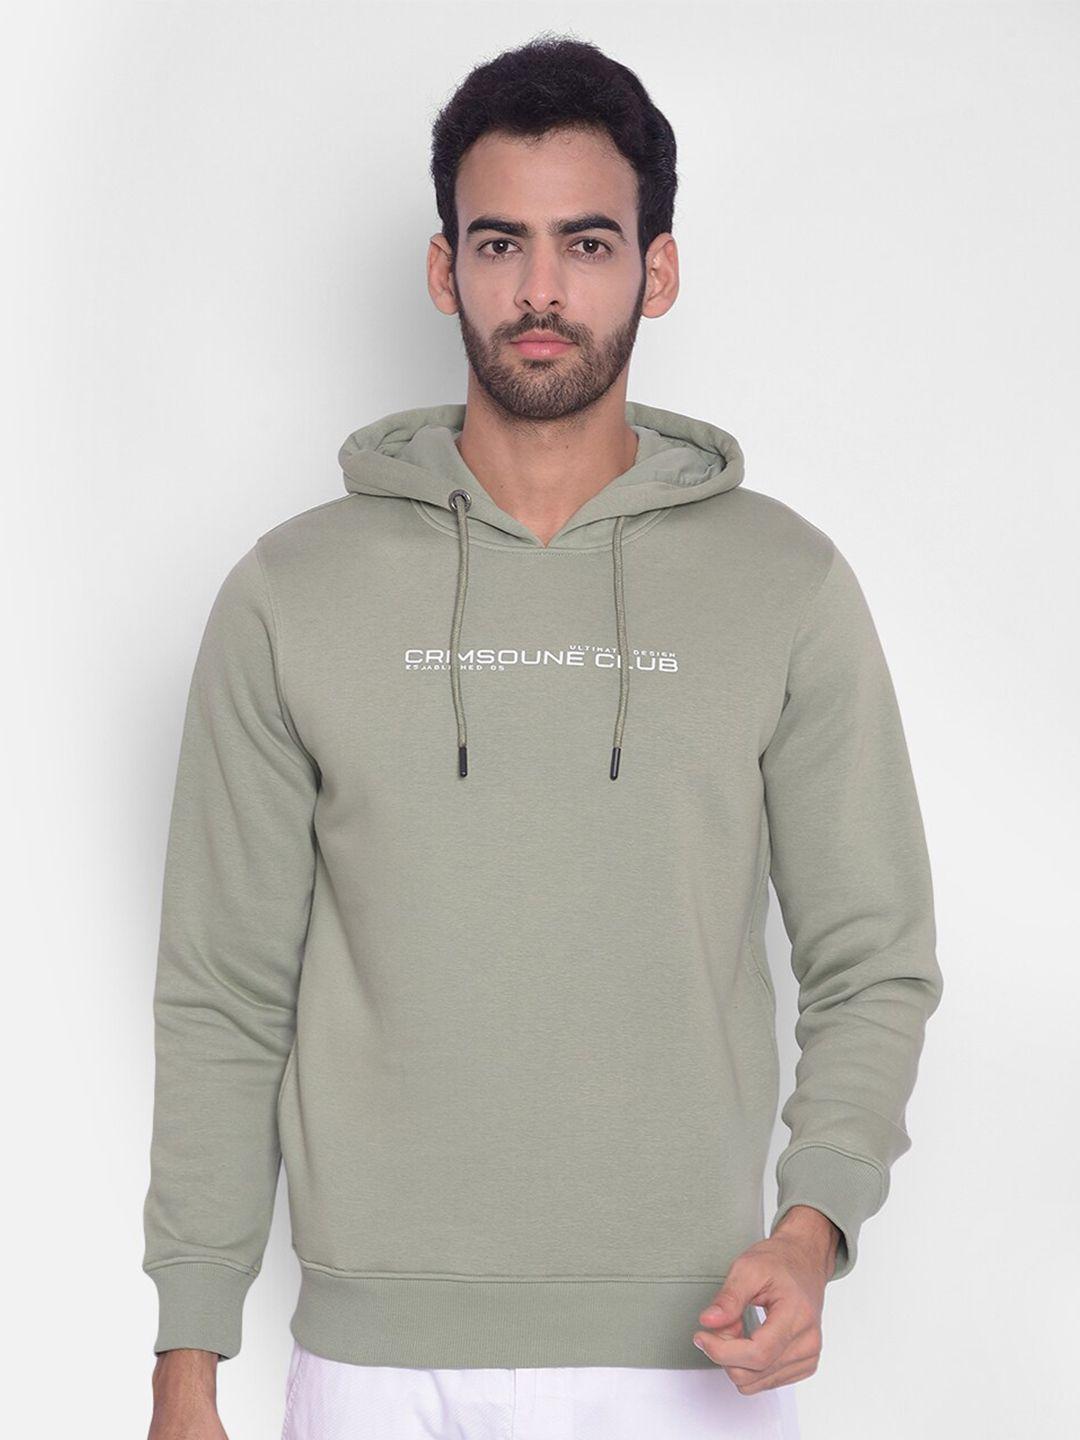 crimsoune-club-typography-printed-hooded-sweatshirt